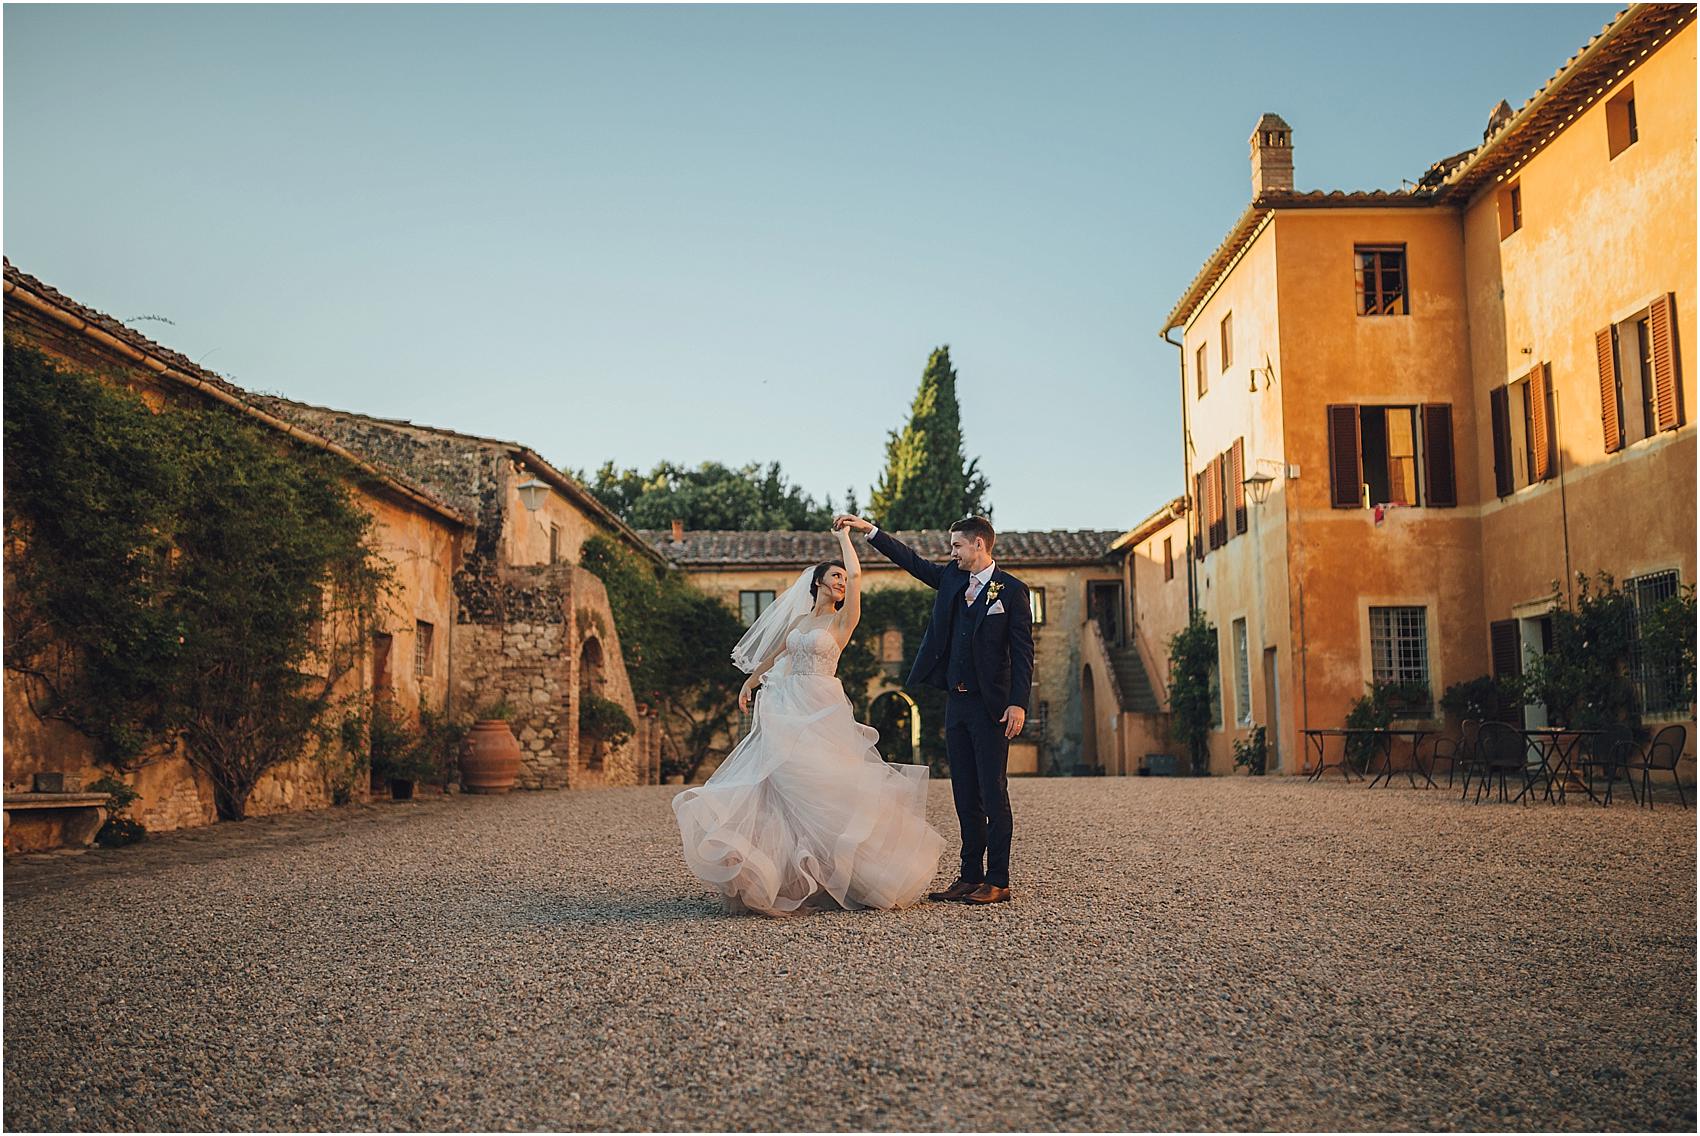 Wedding photographer Tuscany - villa Catignano